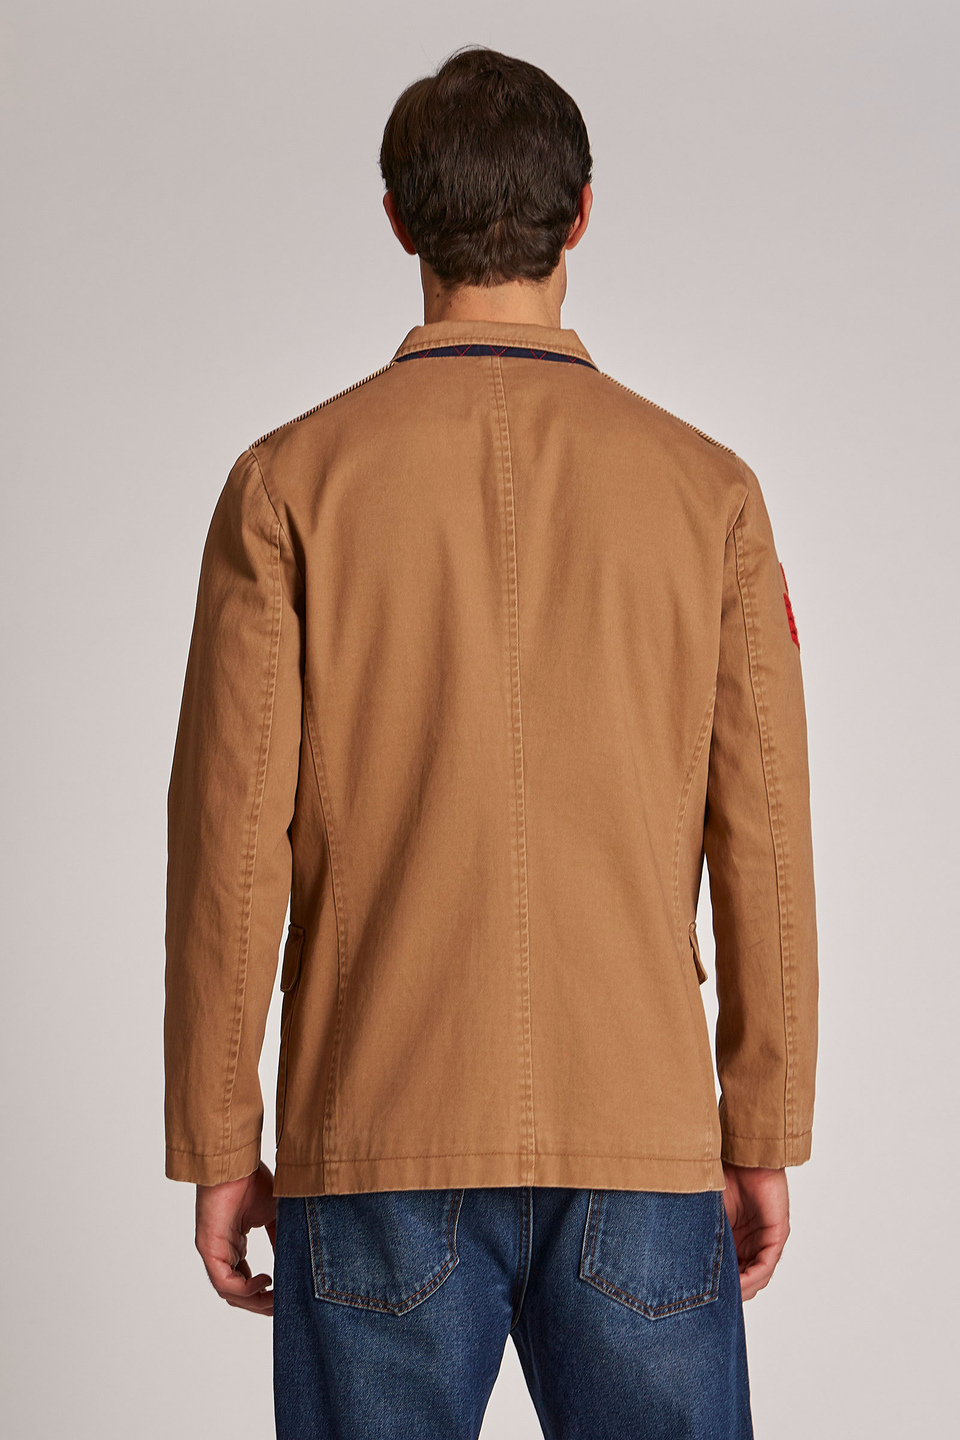 Giacca da uomo in cotone misto lino modello sahariana regular fit - La Martina - Official Online Shop